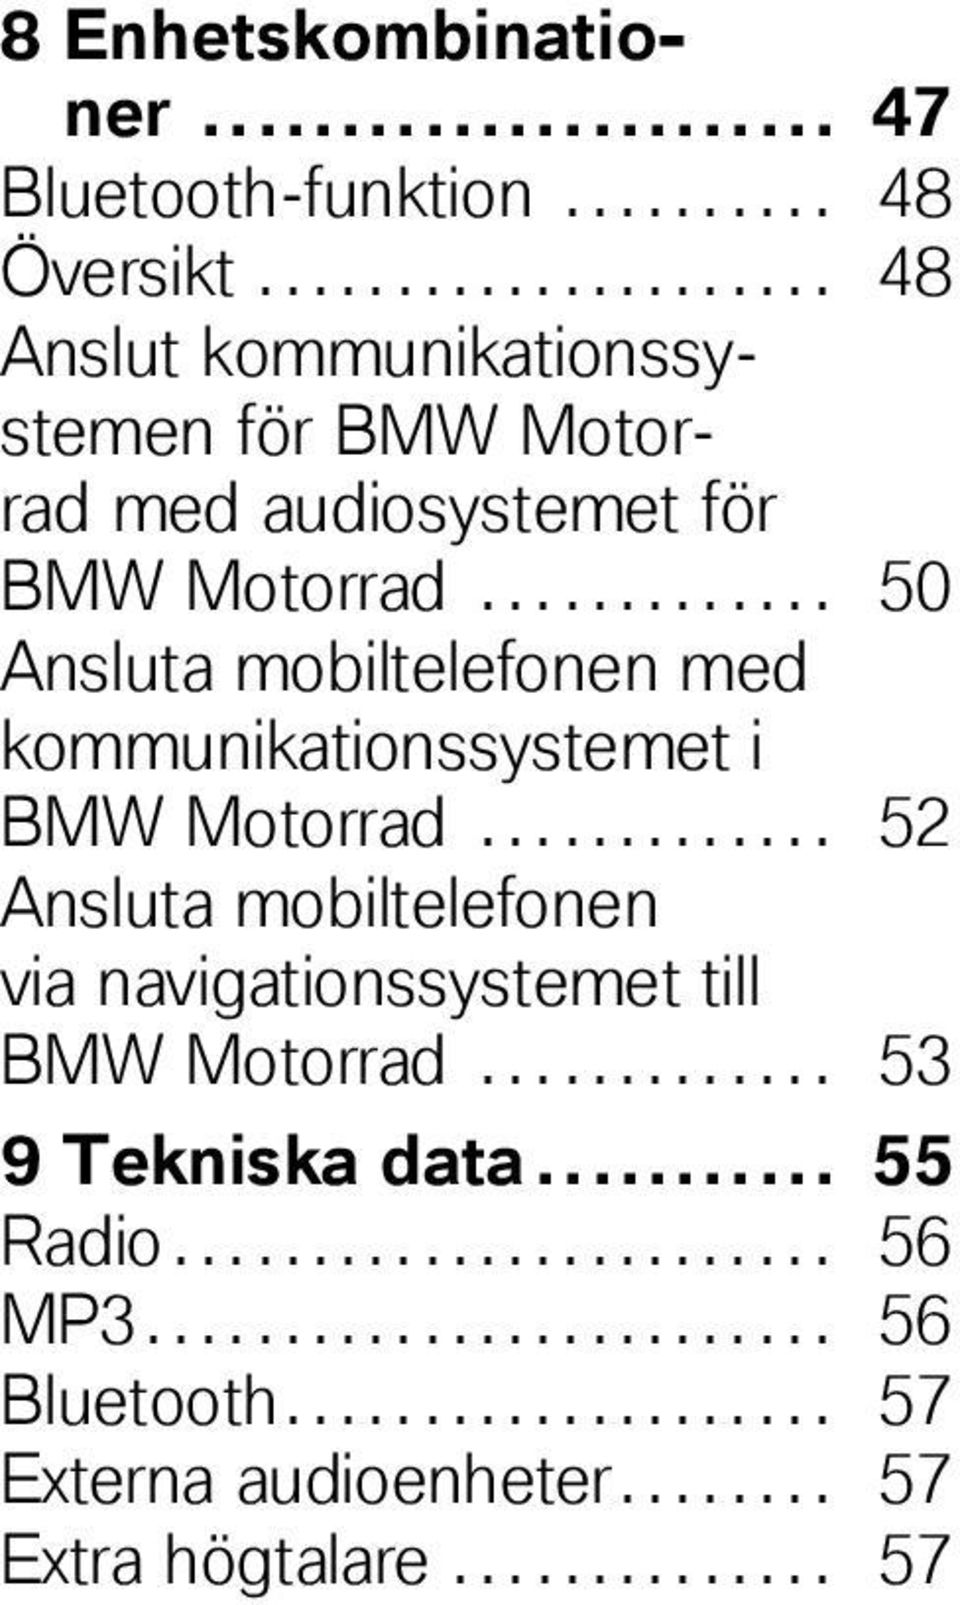 ............ 50 Ansluta mobiltelefonen med kommunikationssystemet i BMW Motorrad.